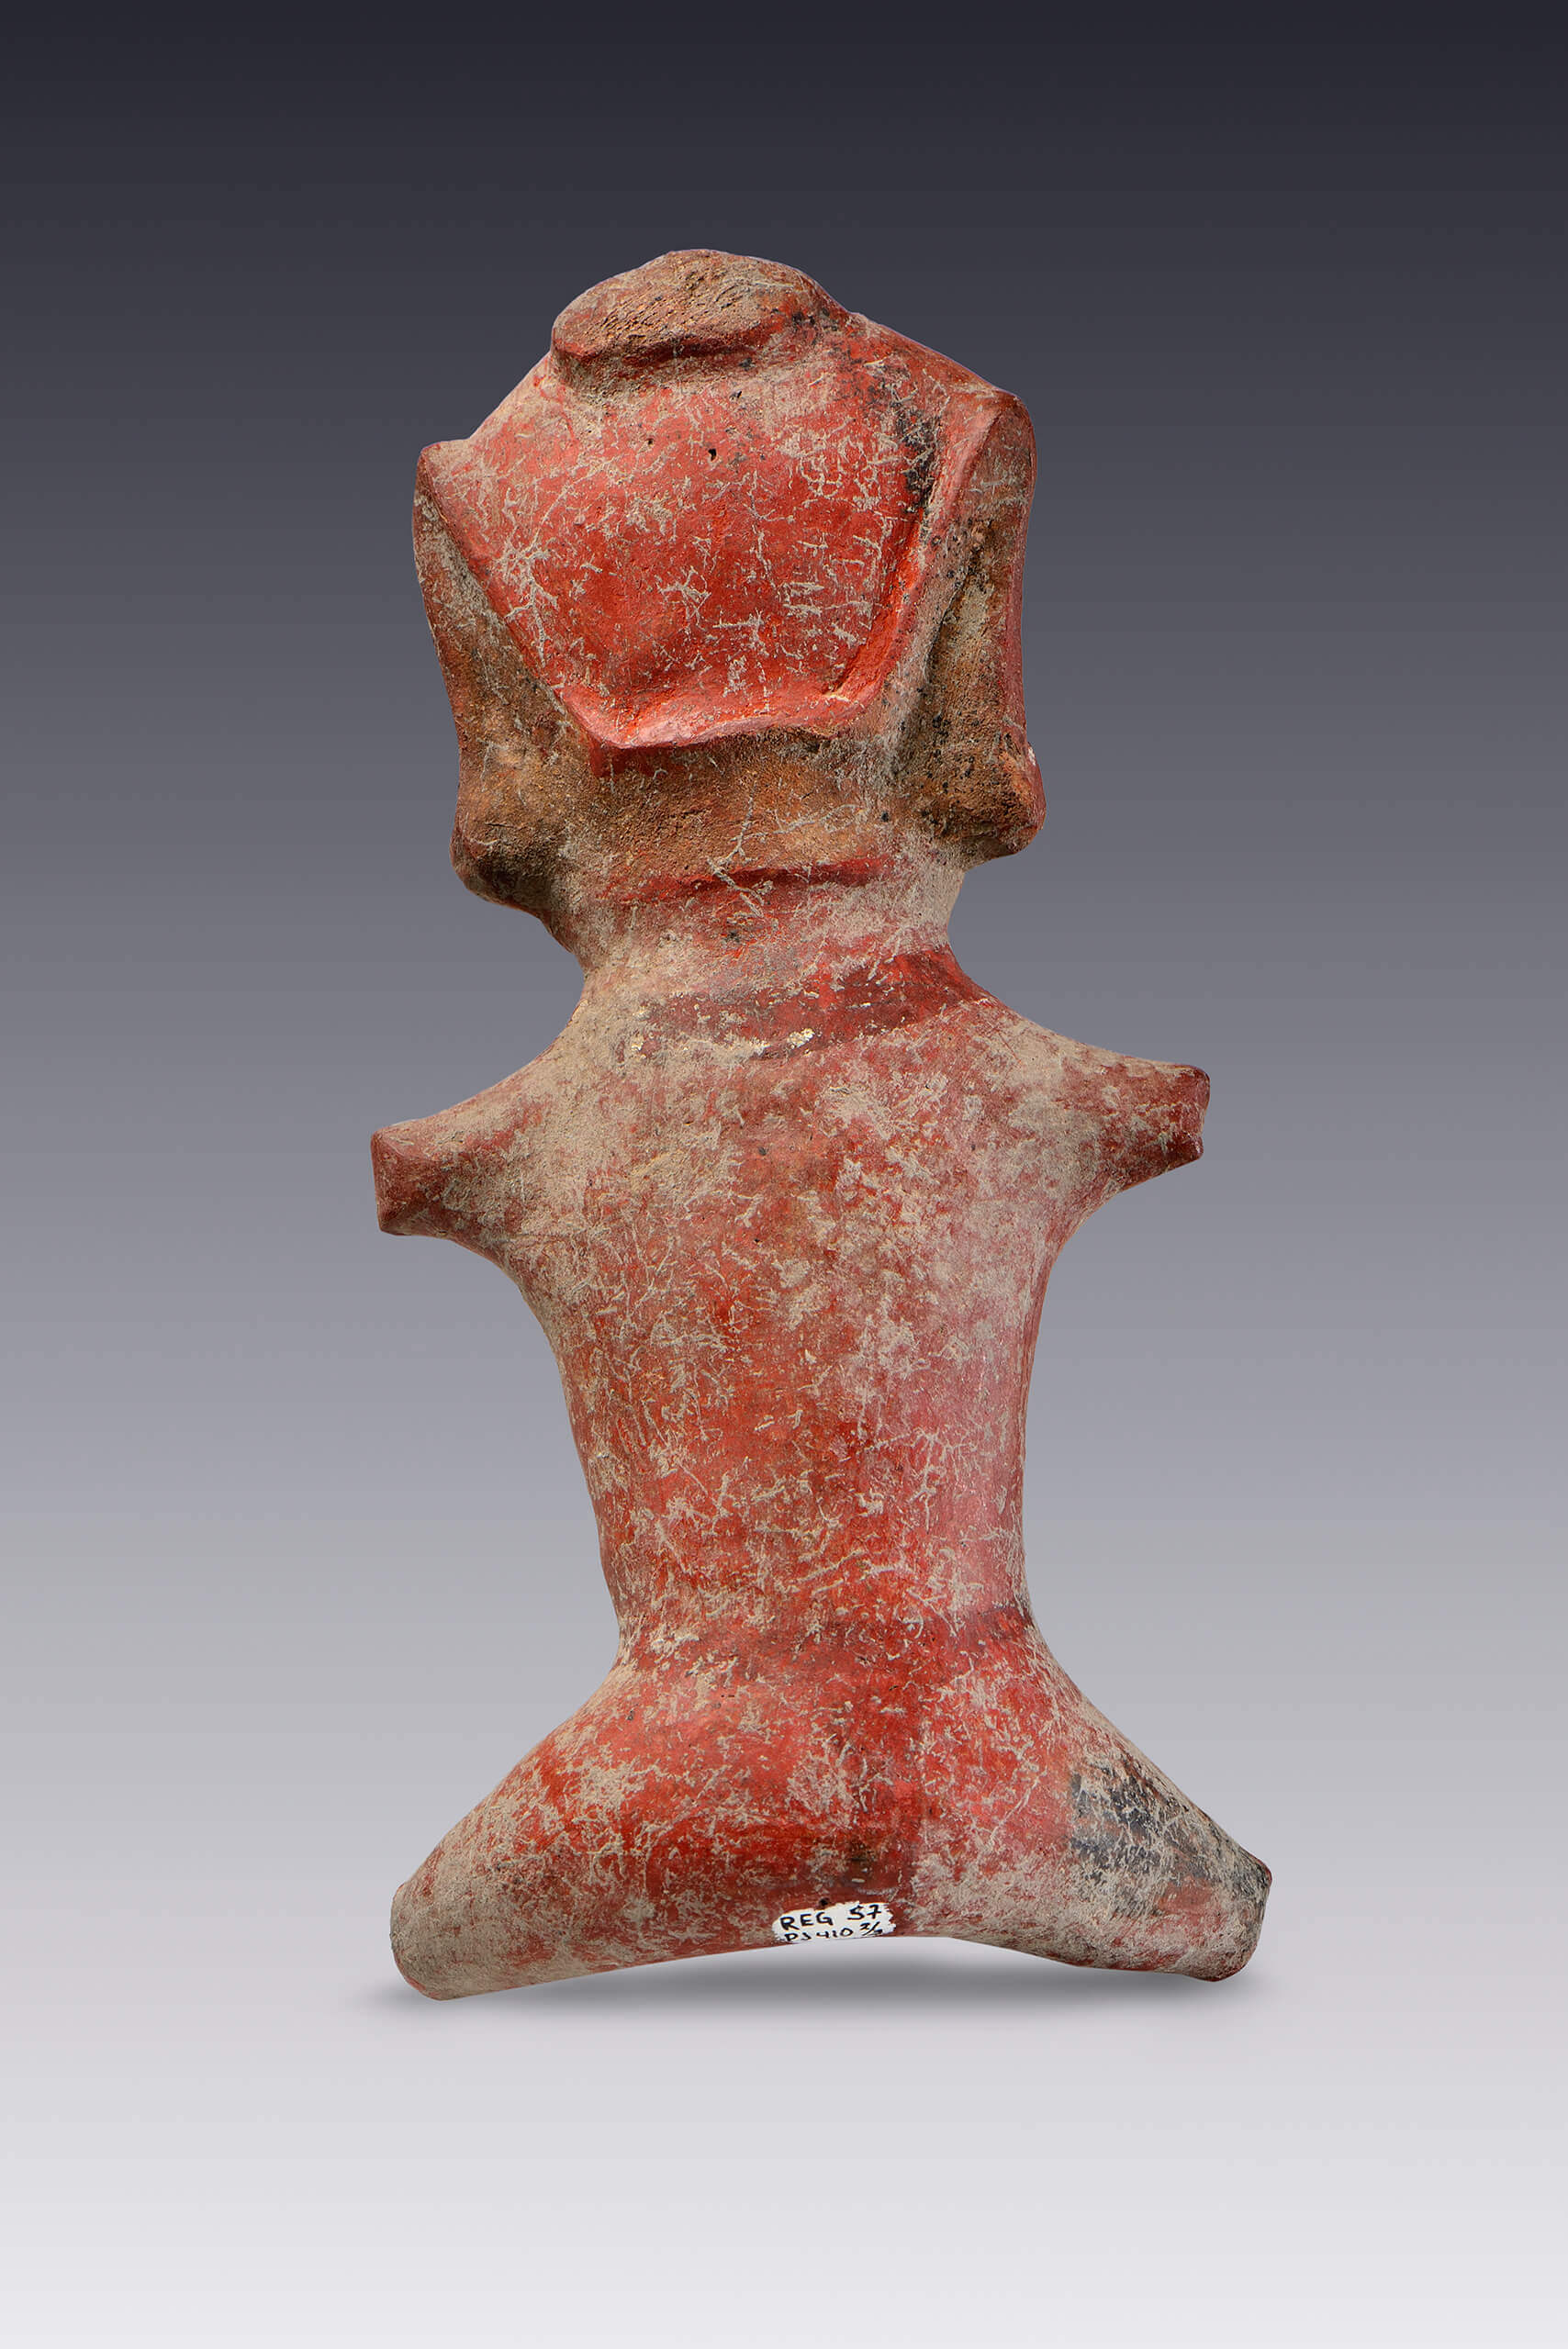 Mujeres sentadas y pintadas de rojo | El México antiguo. Salas de Arte Prehispánico | Museo Amparo, Puebla